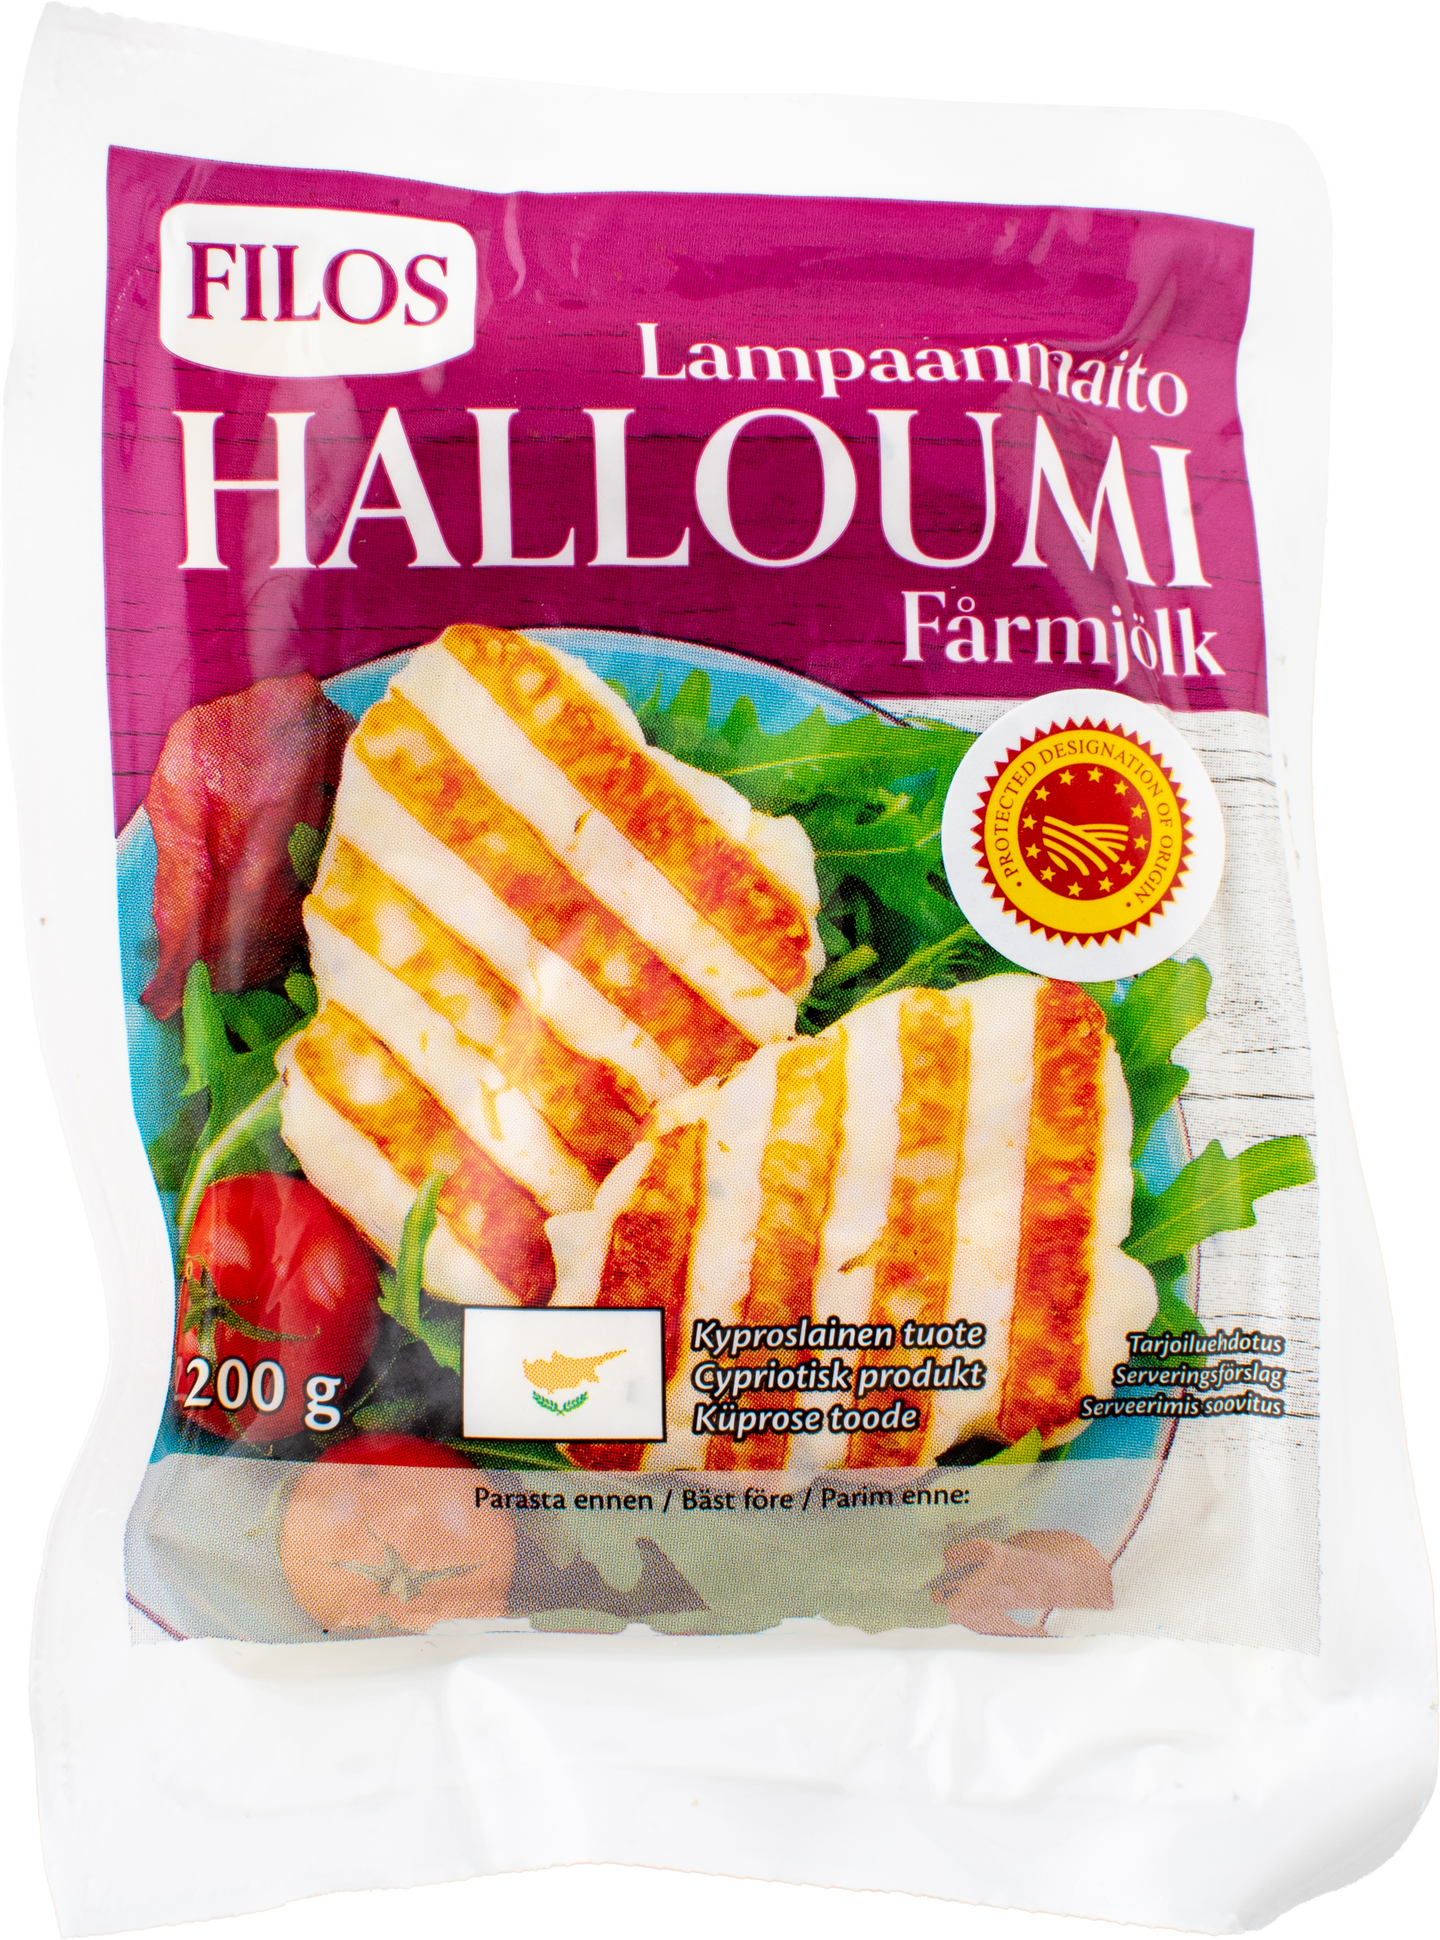 Filos Halloumi-juusto PDO lampaanmaito 200g